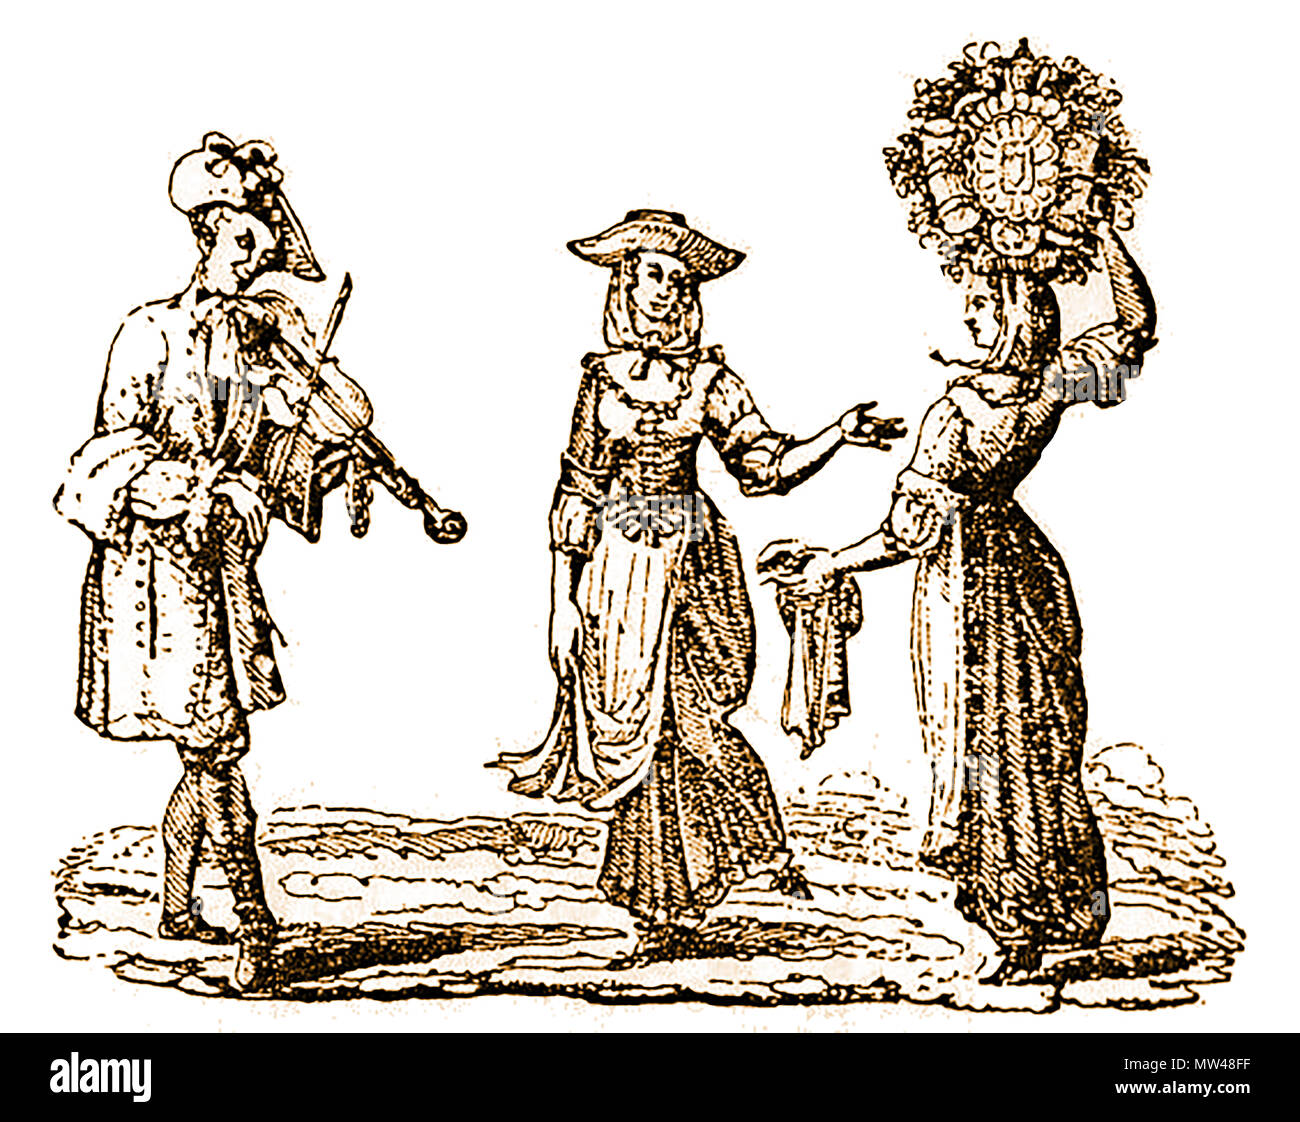 Tag der Feierlichkeiten in Großbritannien, wurden häufig von freudenfeuer begleitet, tanzen um maibäume und der Wahl eines Mai Königin, die in diesem 17. Jahrhundert Bild ist eine Sonne (Fruchtbarkeit) Symbol auf Ihrem Kopf Stockfoto